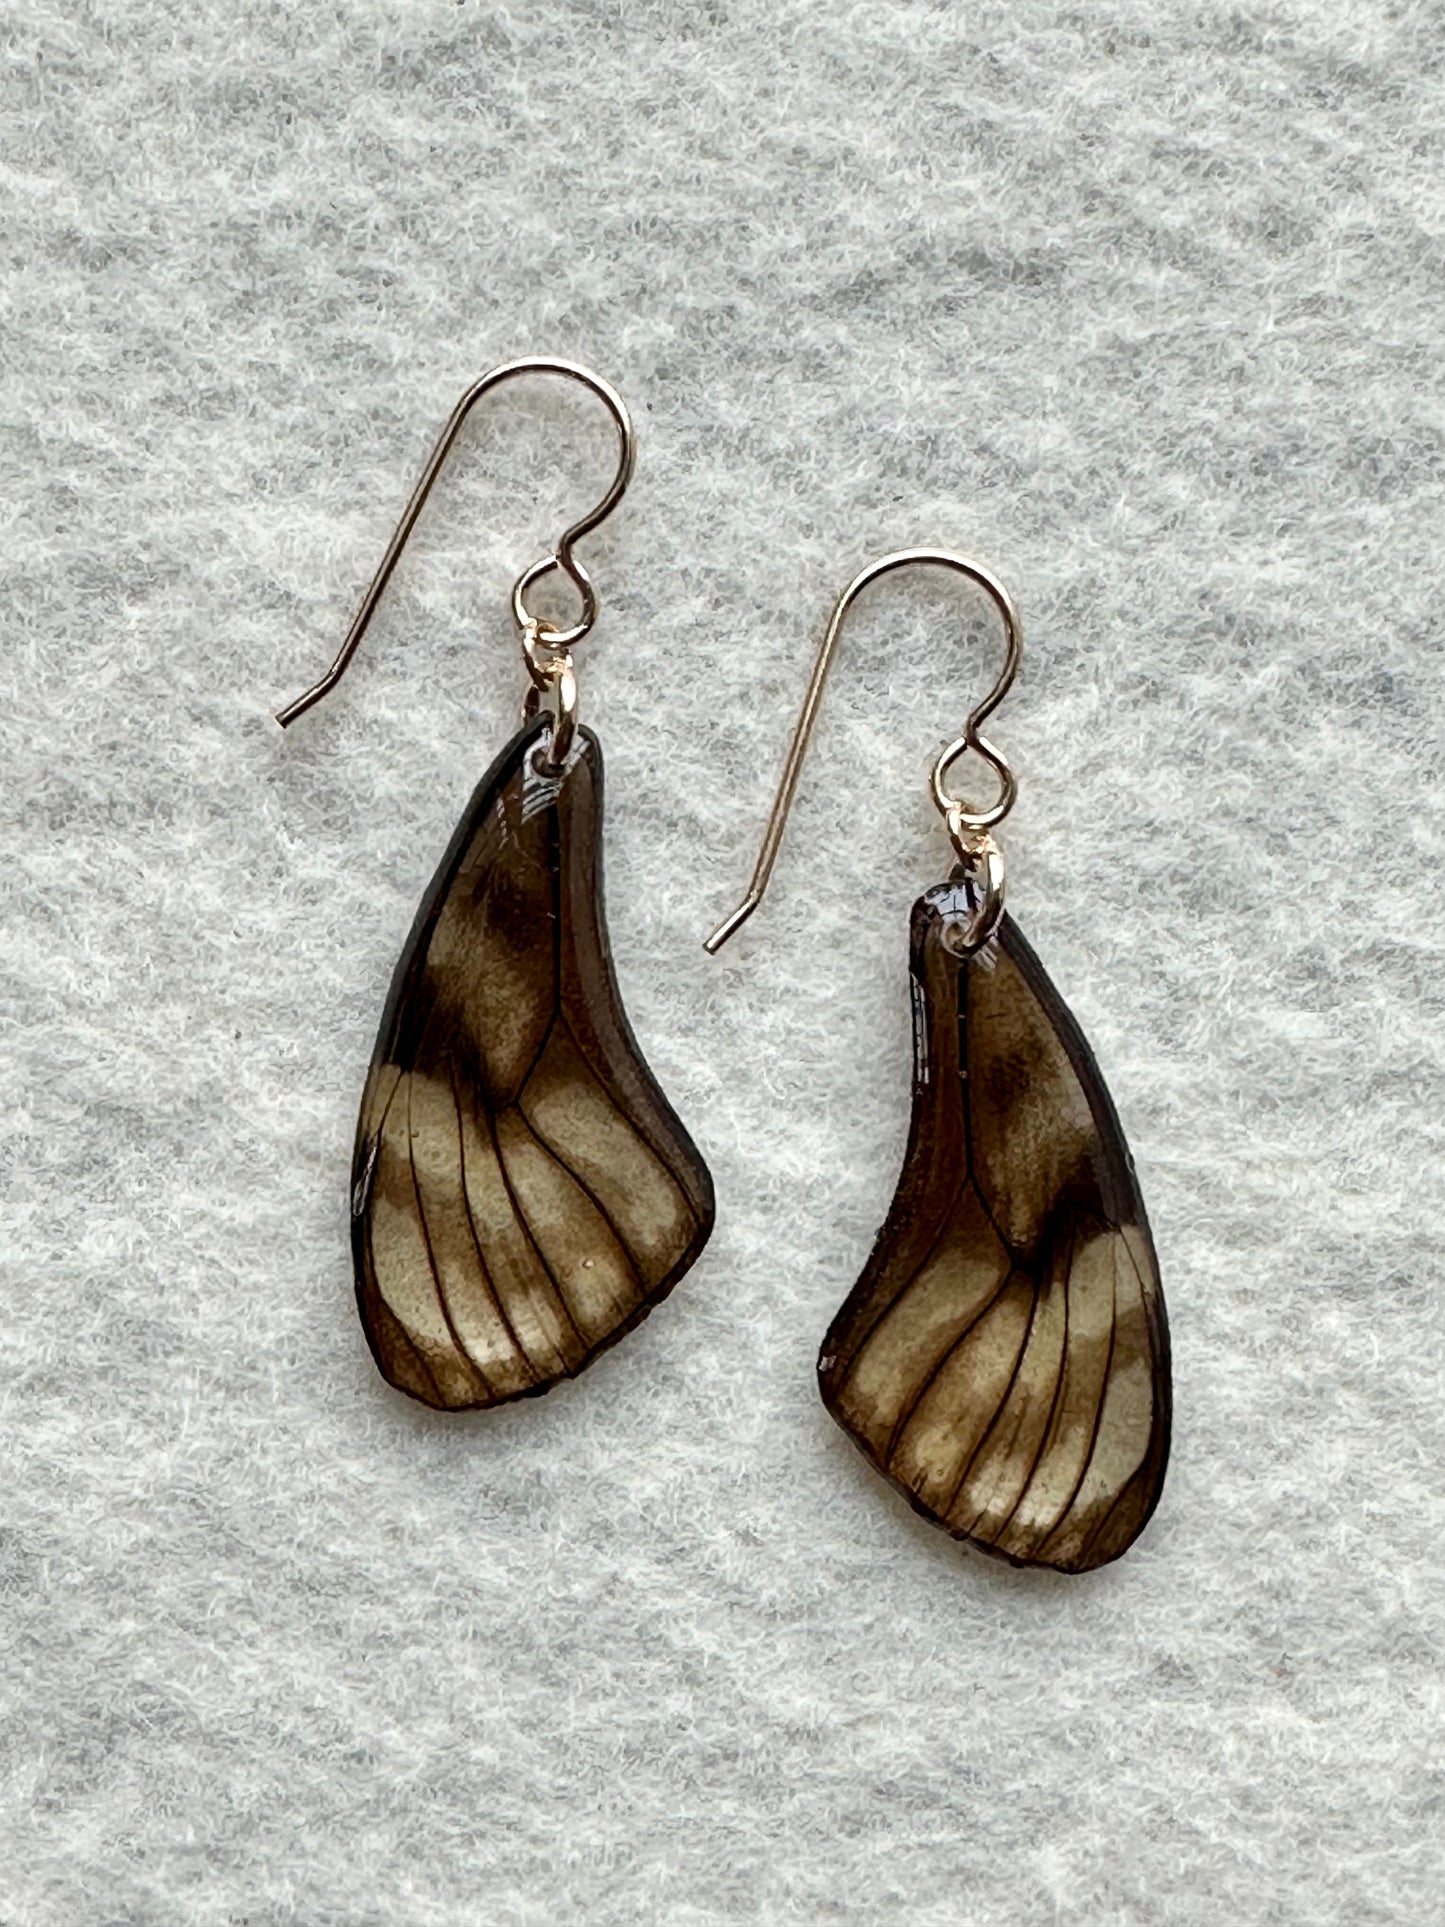 Real Glasswing Butterfly Wing Earrings on Gold Hooks